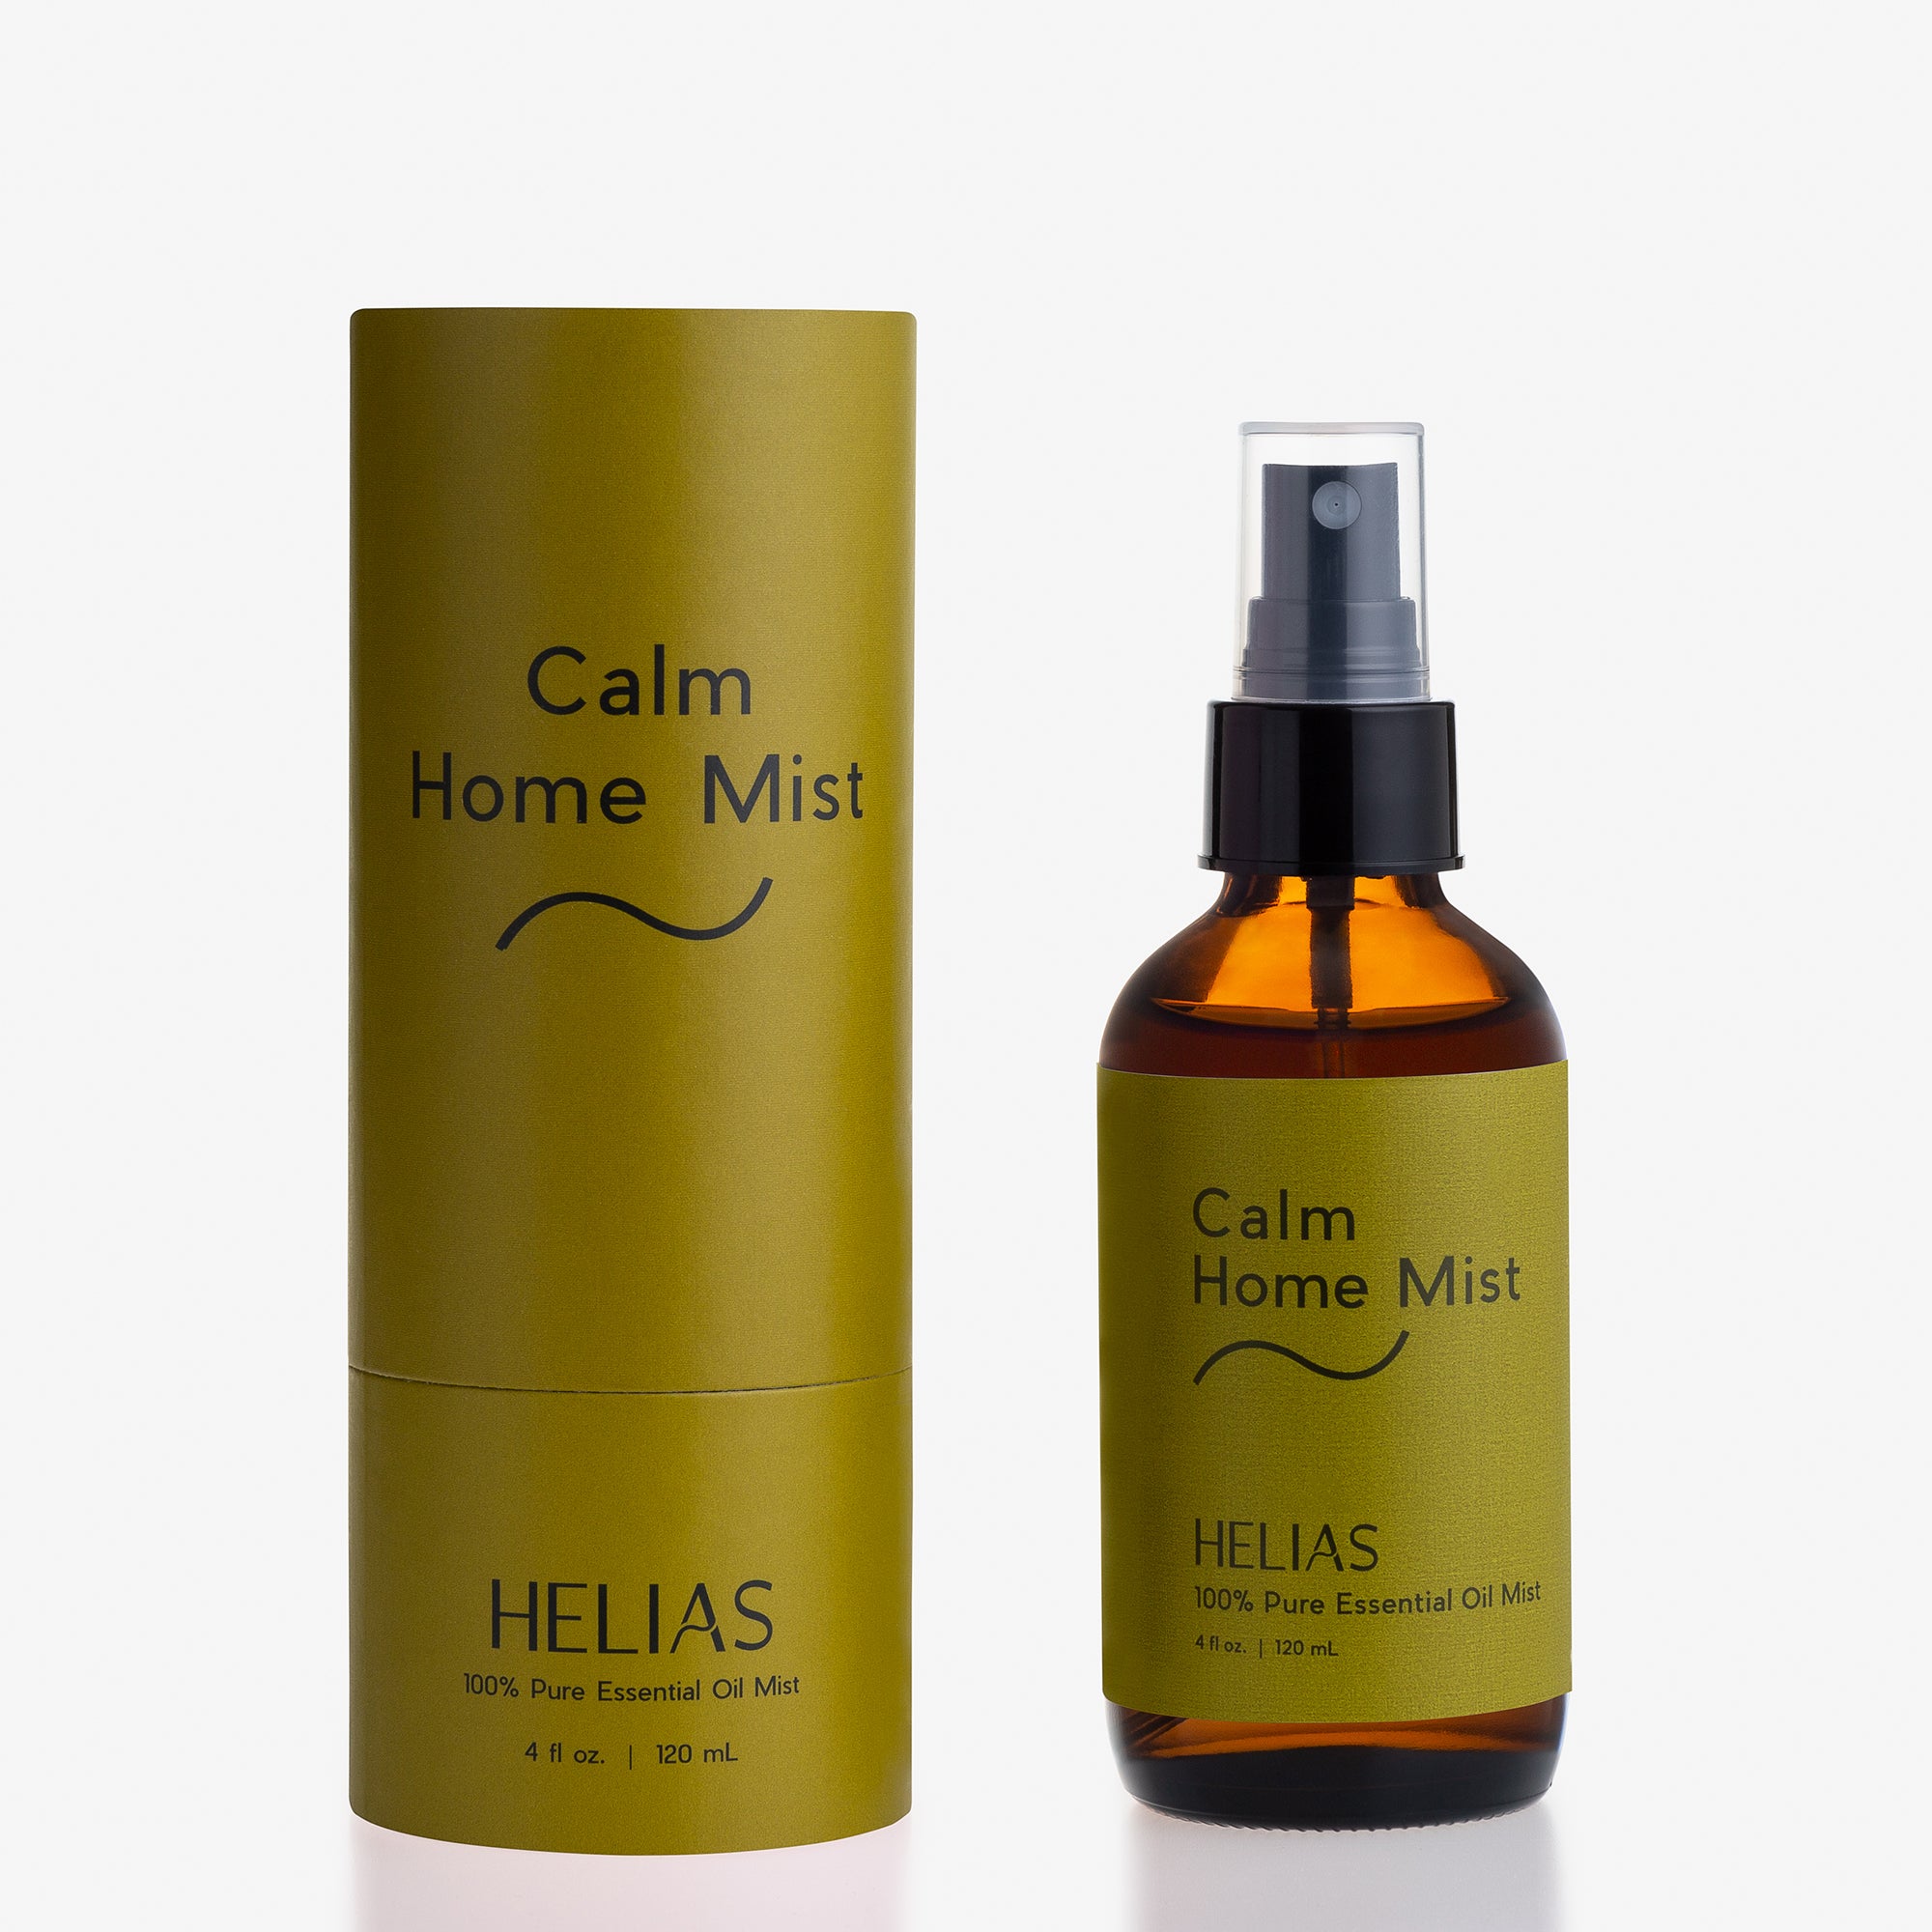 Calm Home Mist Helias Oils